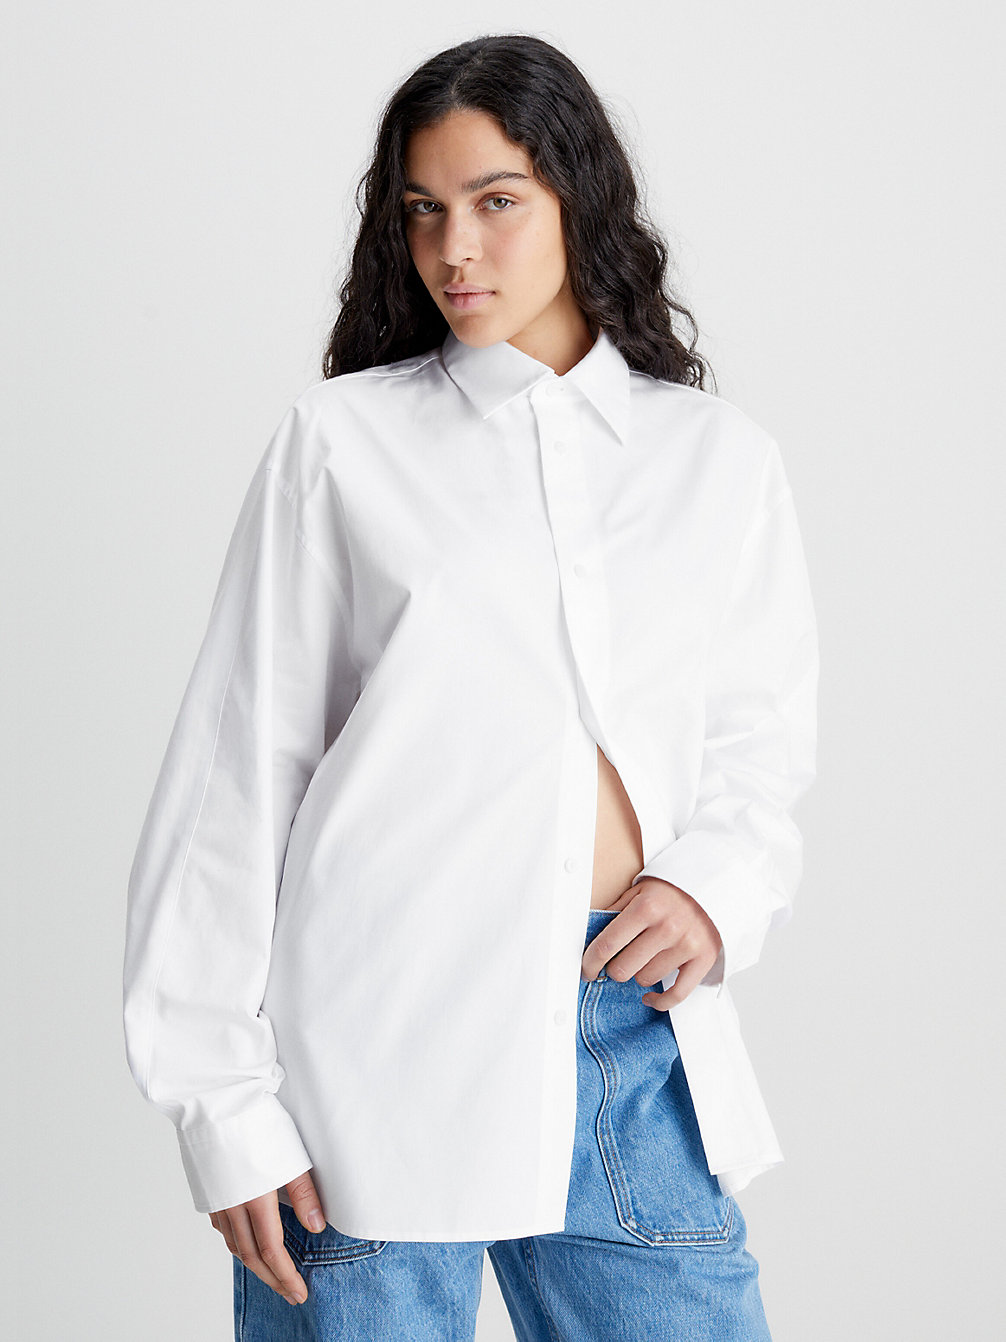 BRILLIANT WHITE Unisex Cotton Twill Shirt - CK Standards undefined men Calvin Klein